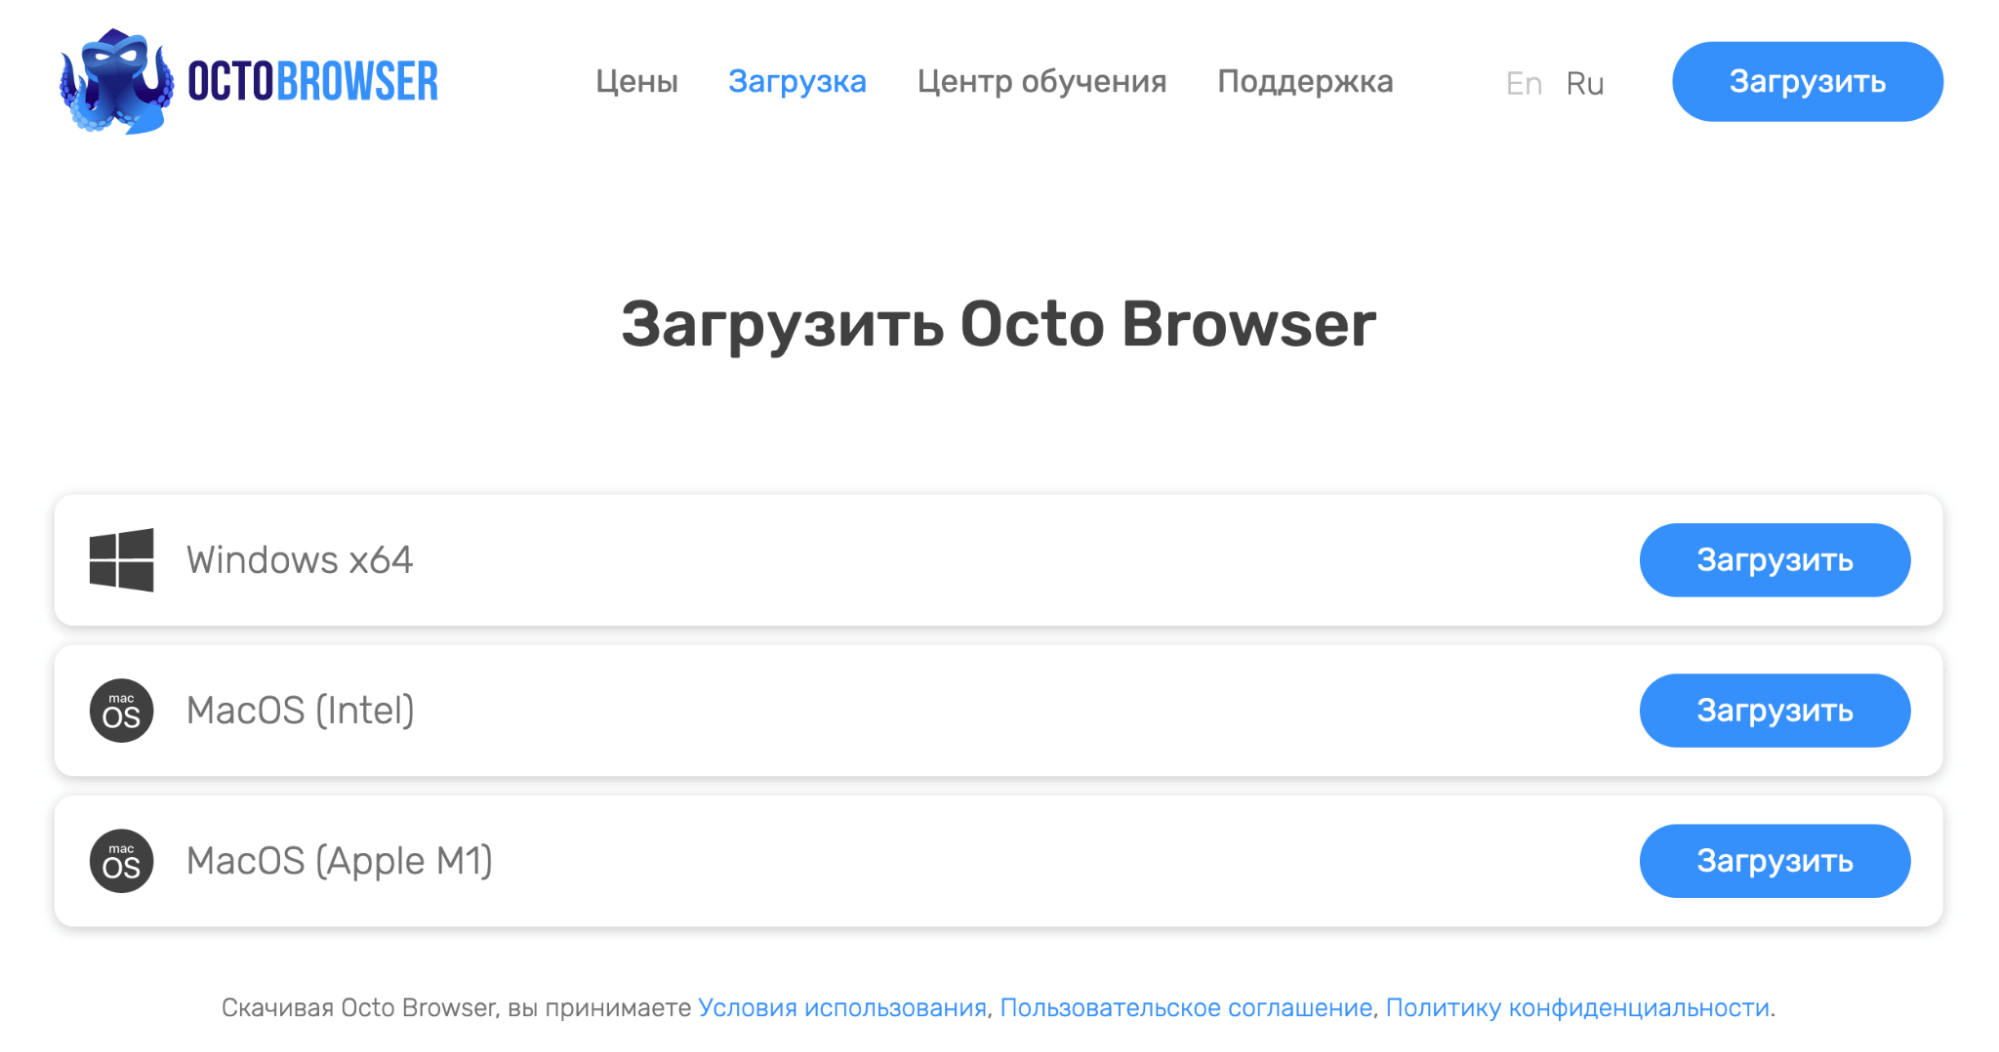 Обзор Octo Browser: тарифы, функции, настройка